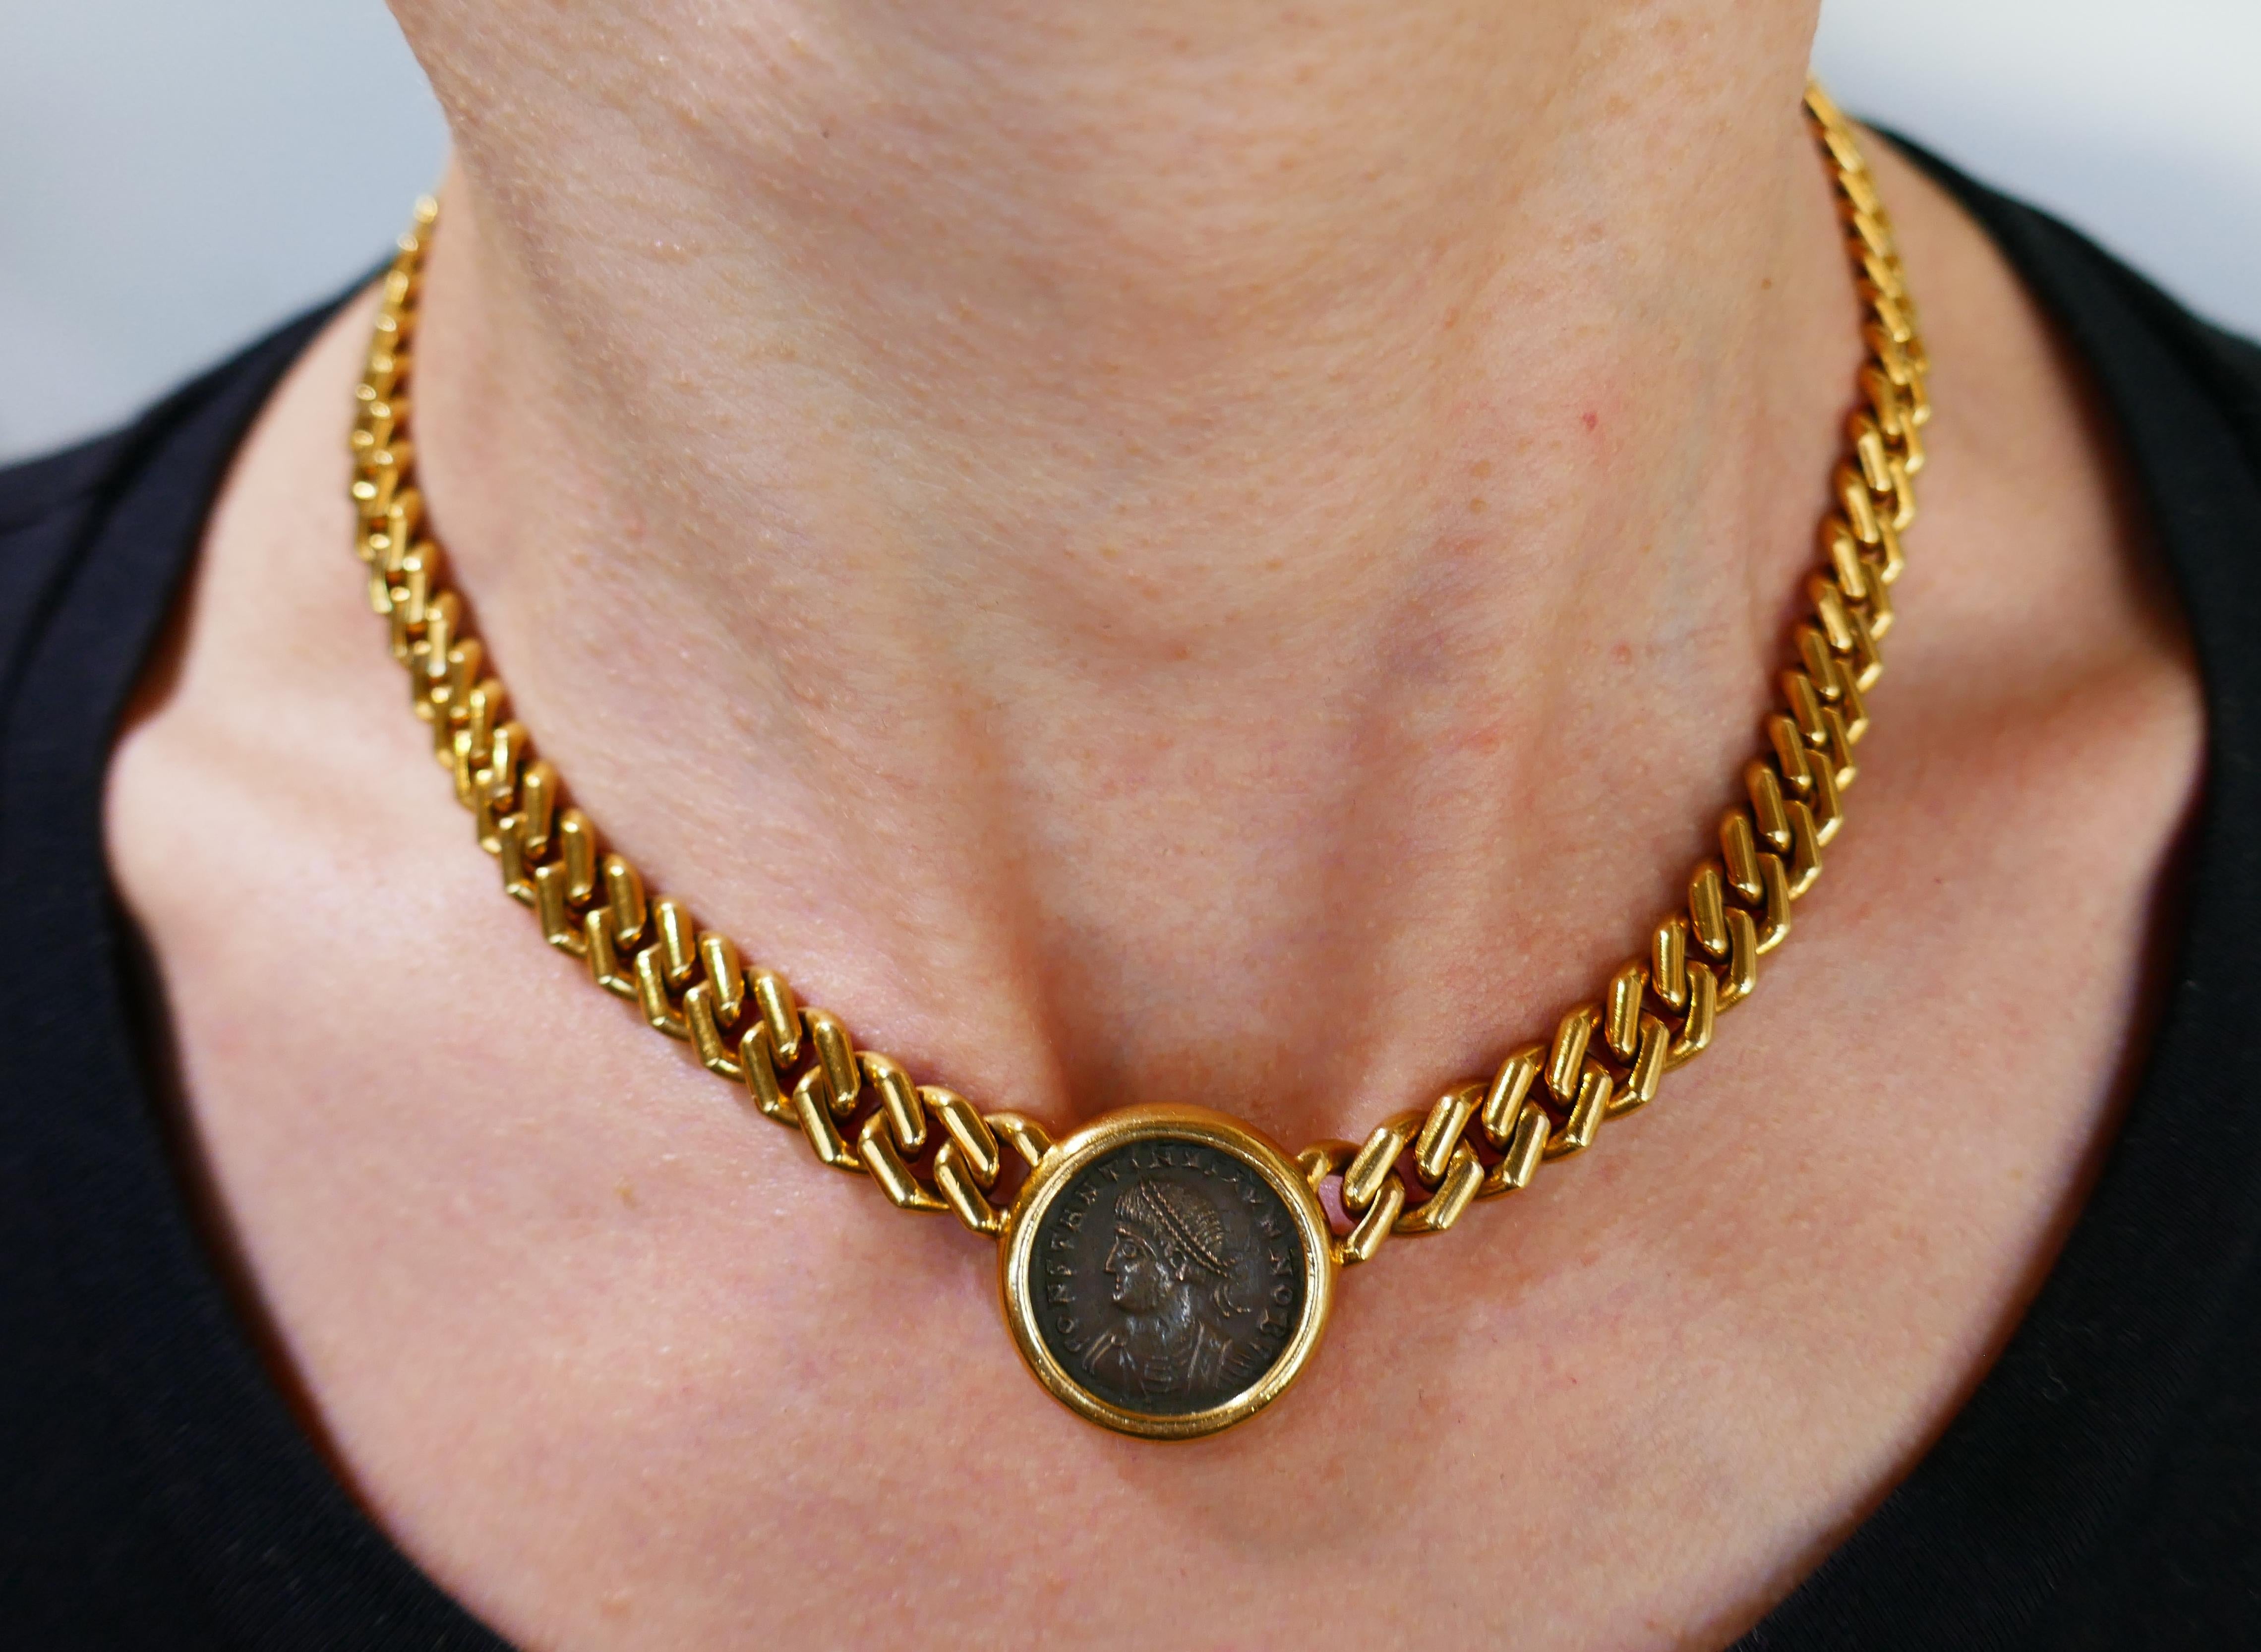 Signatur Bulgari Münze Halskette aus Monete Sammlung. Die kühne:: elegante und tragbare Halskette ist eine großartige Ergänzung für Ihr Schmuckkästchen. 
Die Halskette ist aus 18 Karat Gelbgold gefertigt und zeigt eine antike römische Bronzemünze